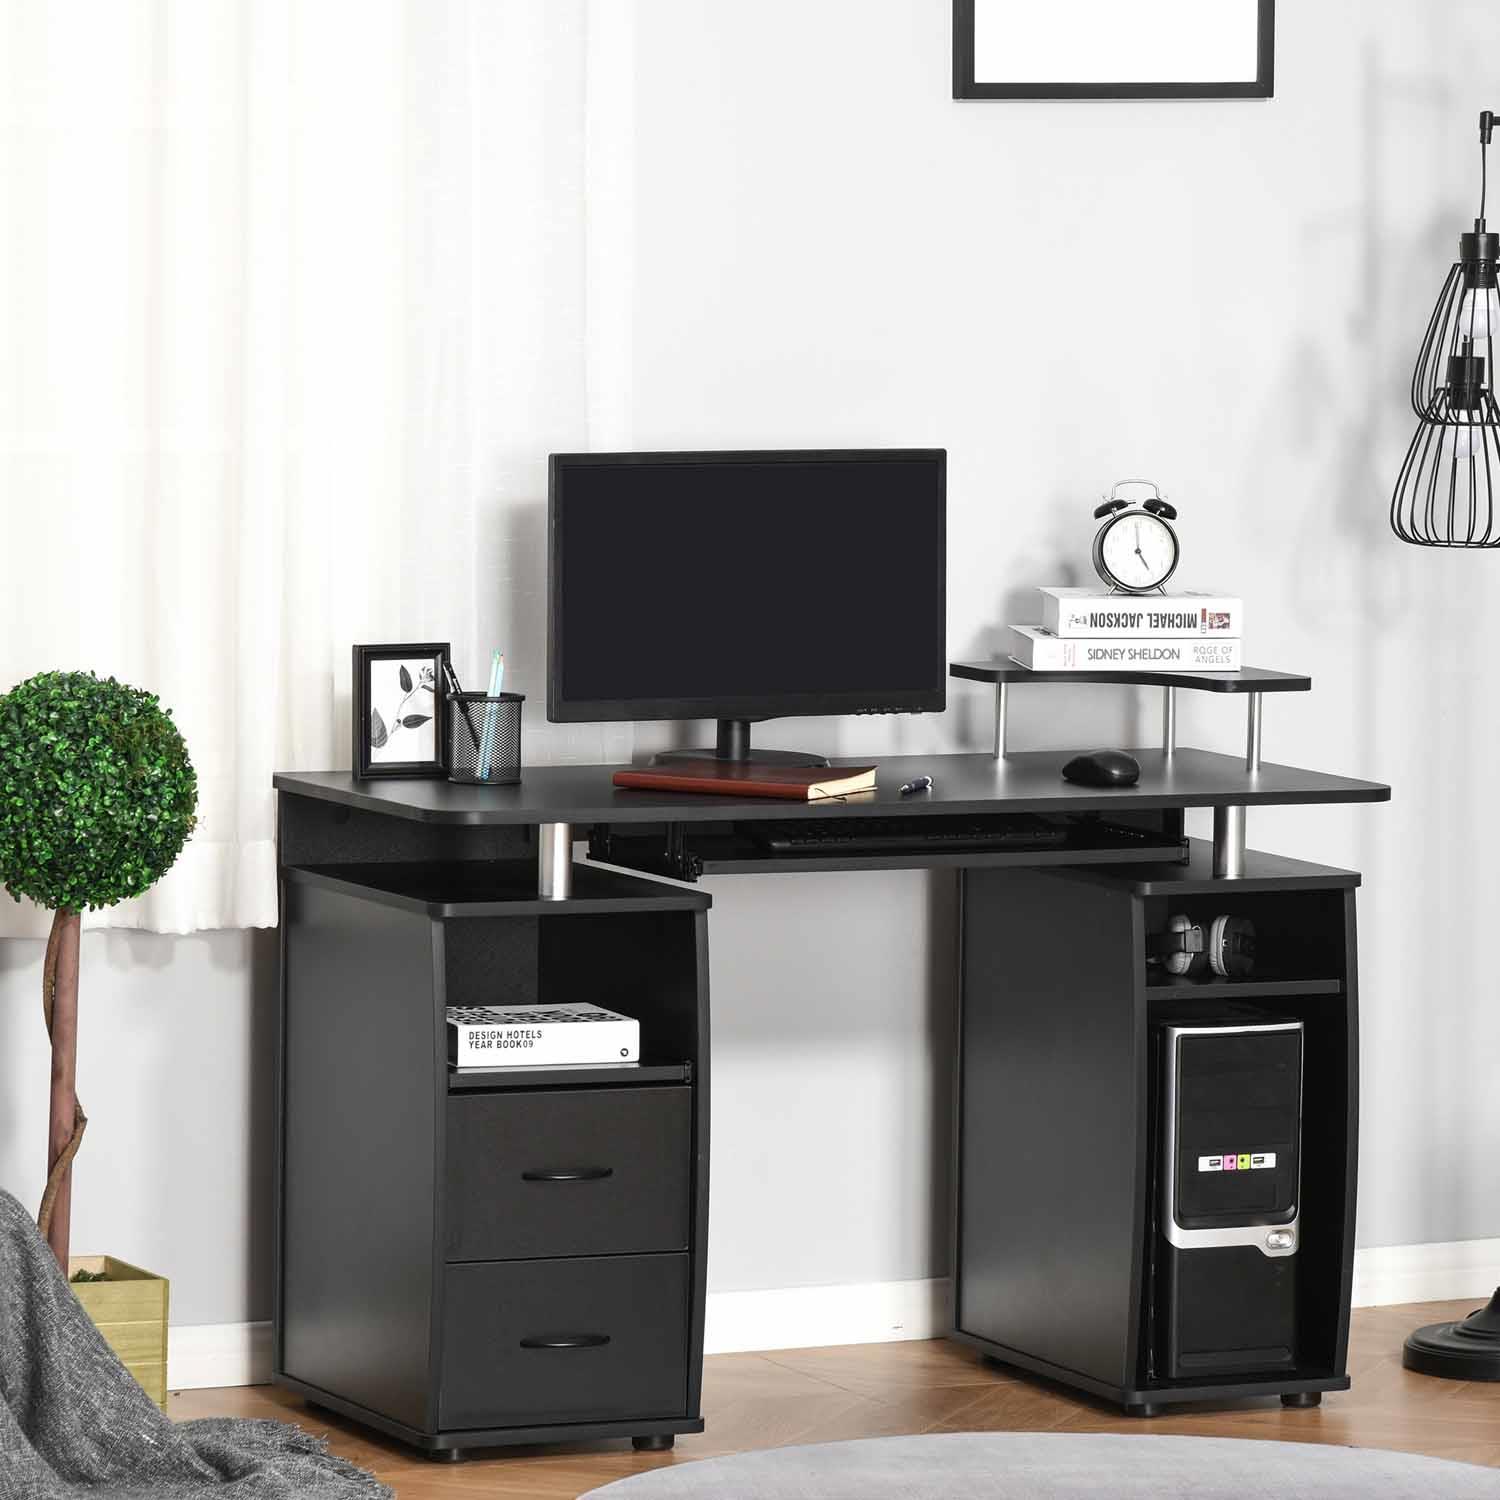 Mesa de ordenador GRISO en madera color negro 